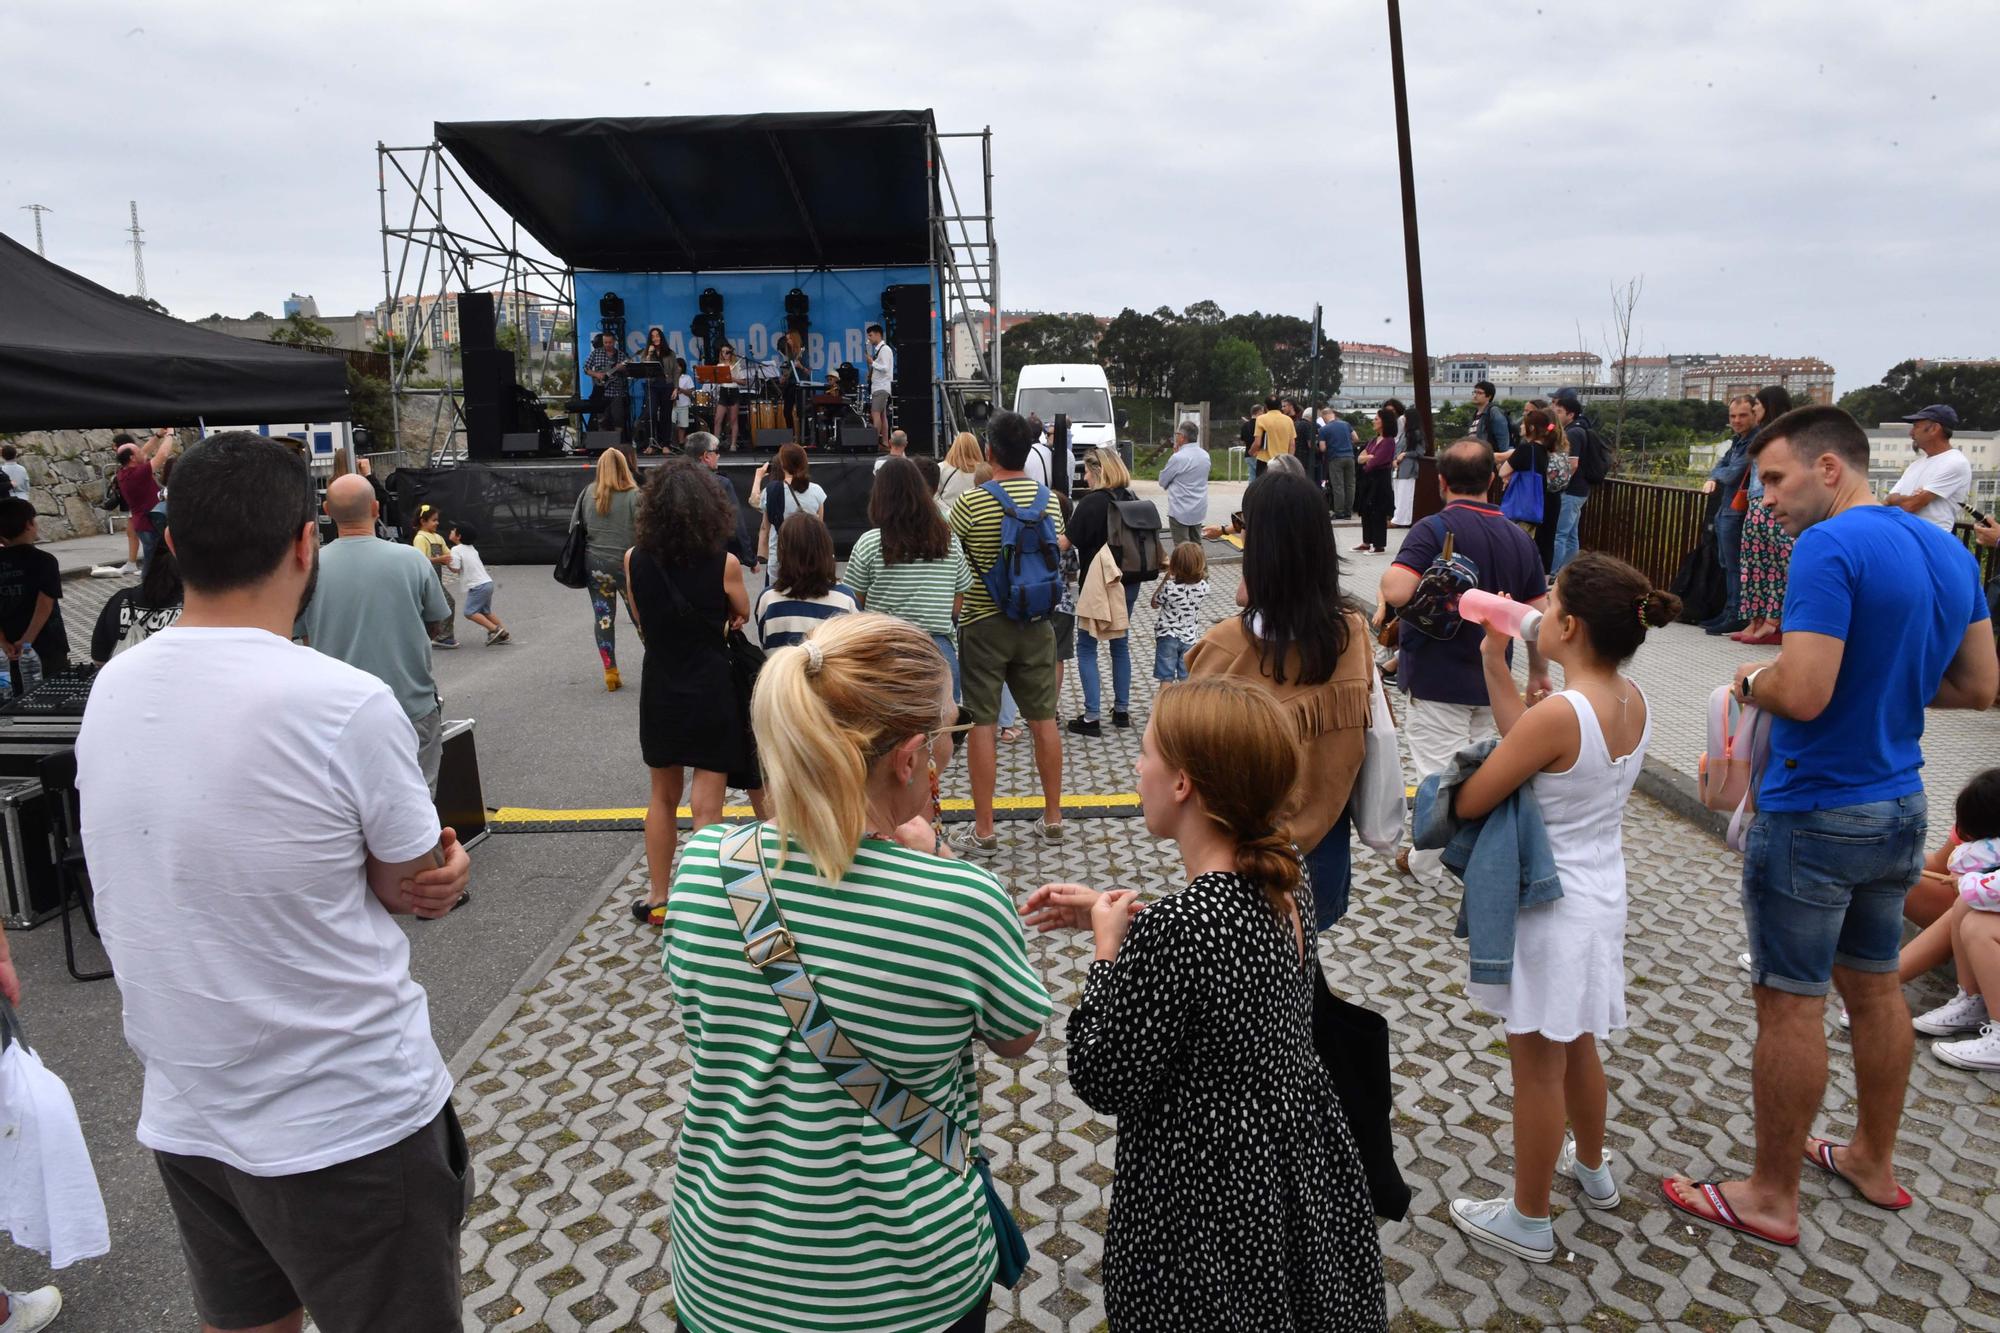 Fiestas de verano en los barrios de A Coruña: Bens y Visma, los primeros